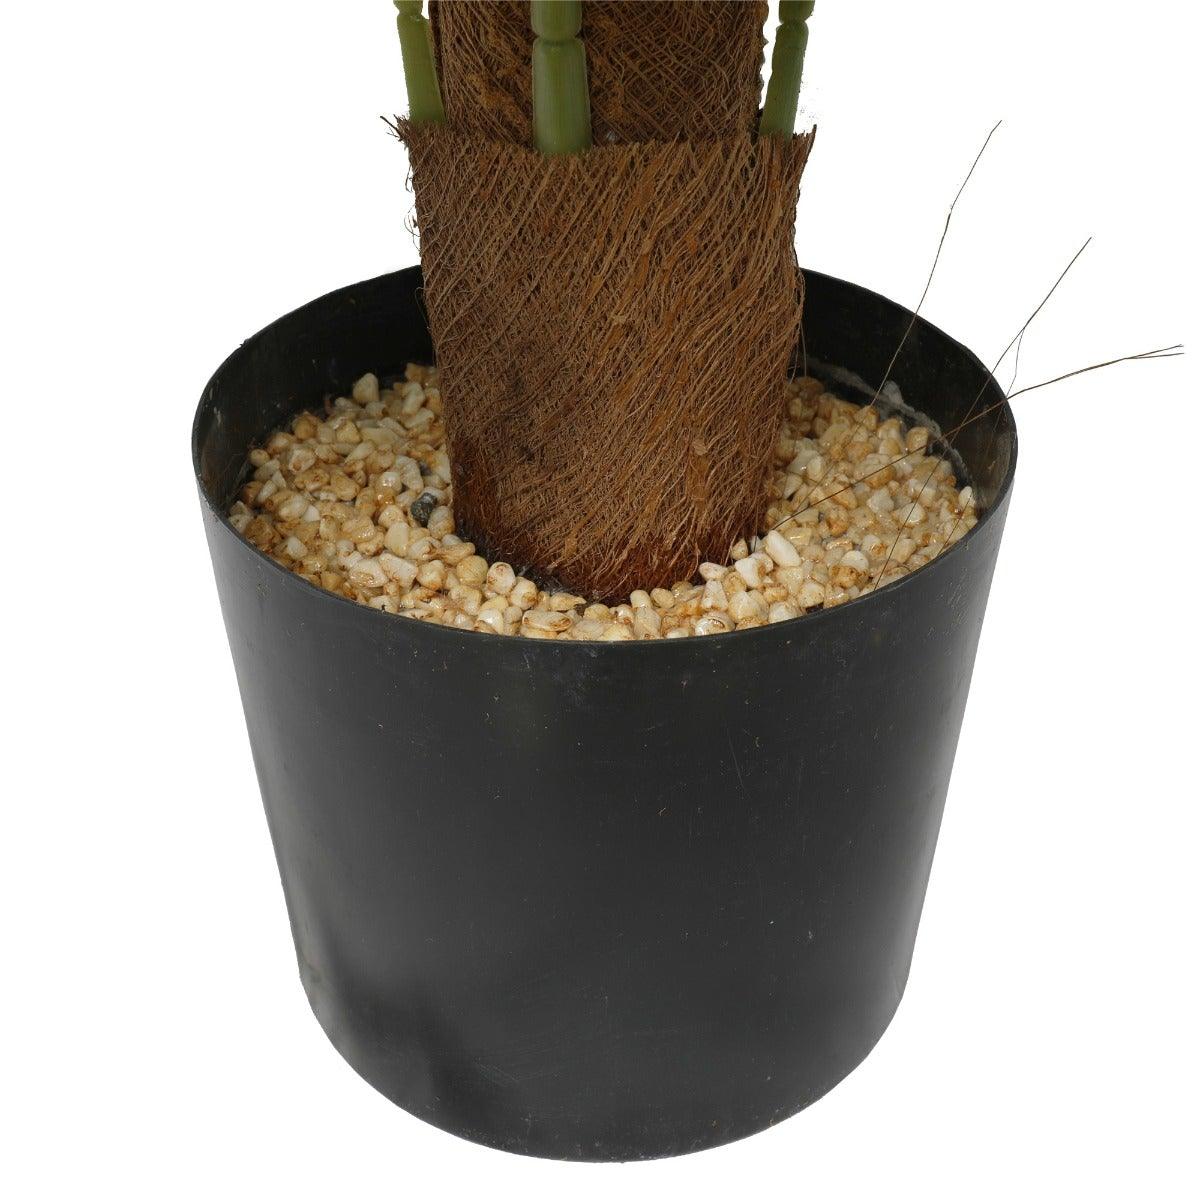 Artificial Money Plant (Monstera) with decorative pot 180cm